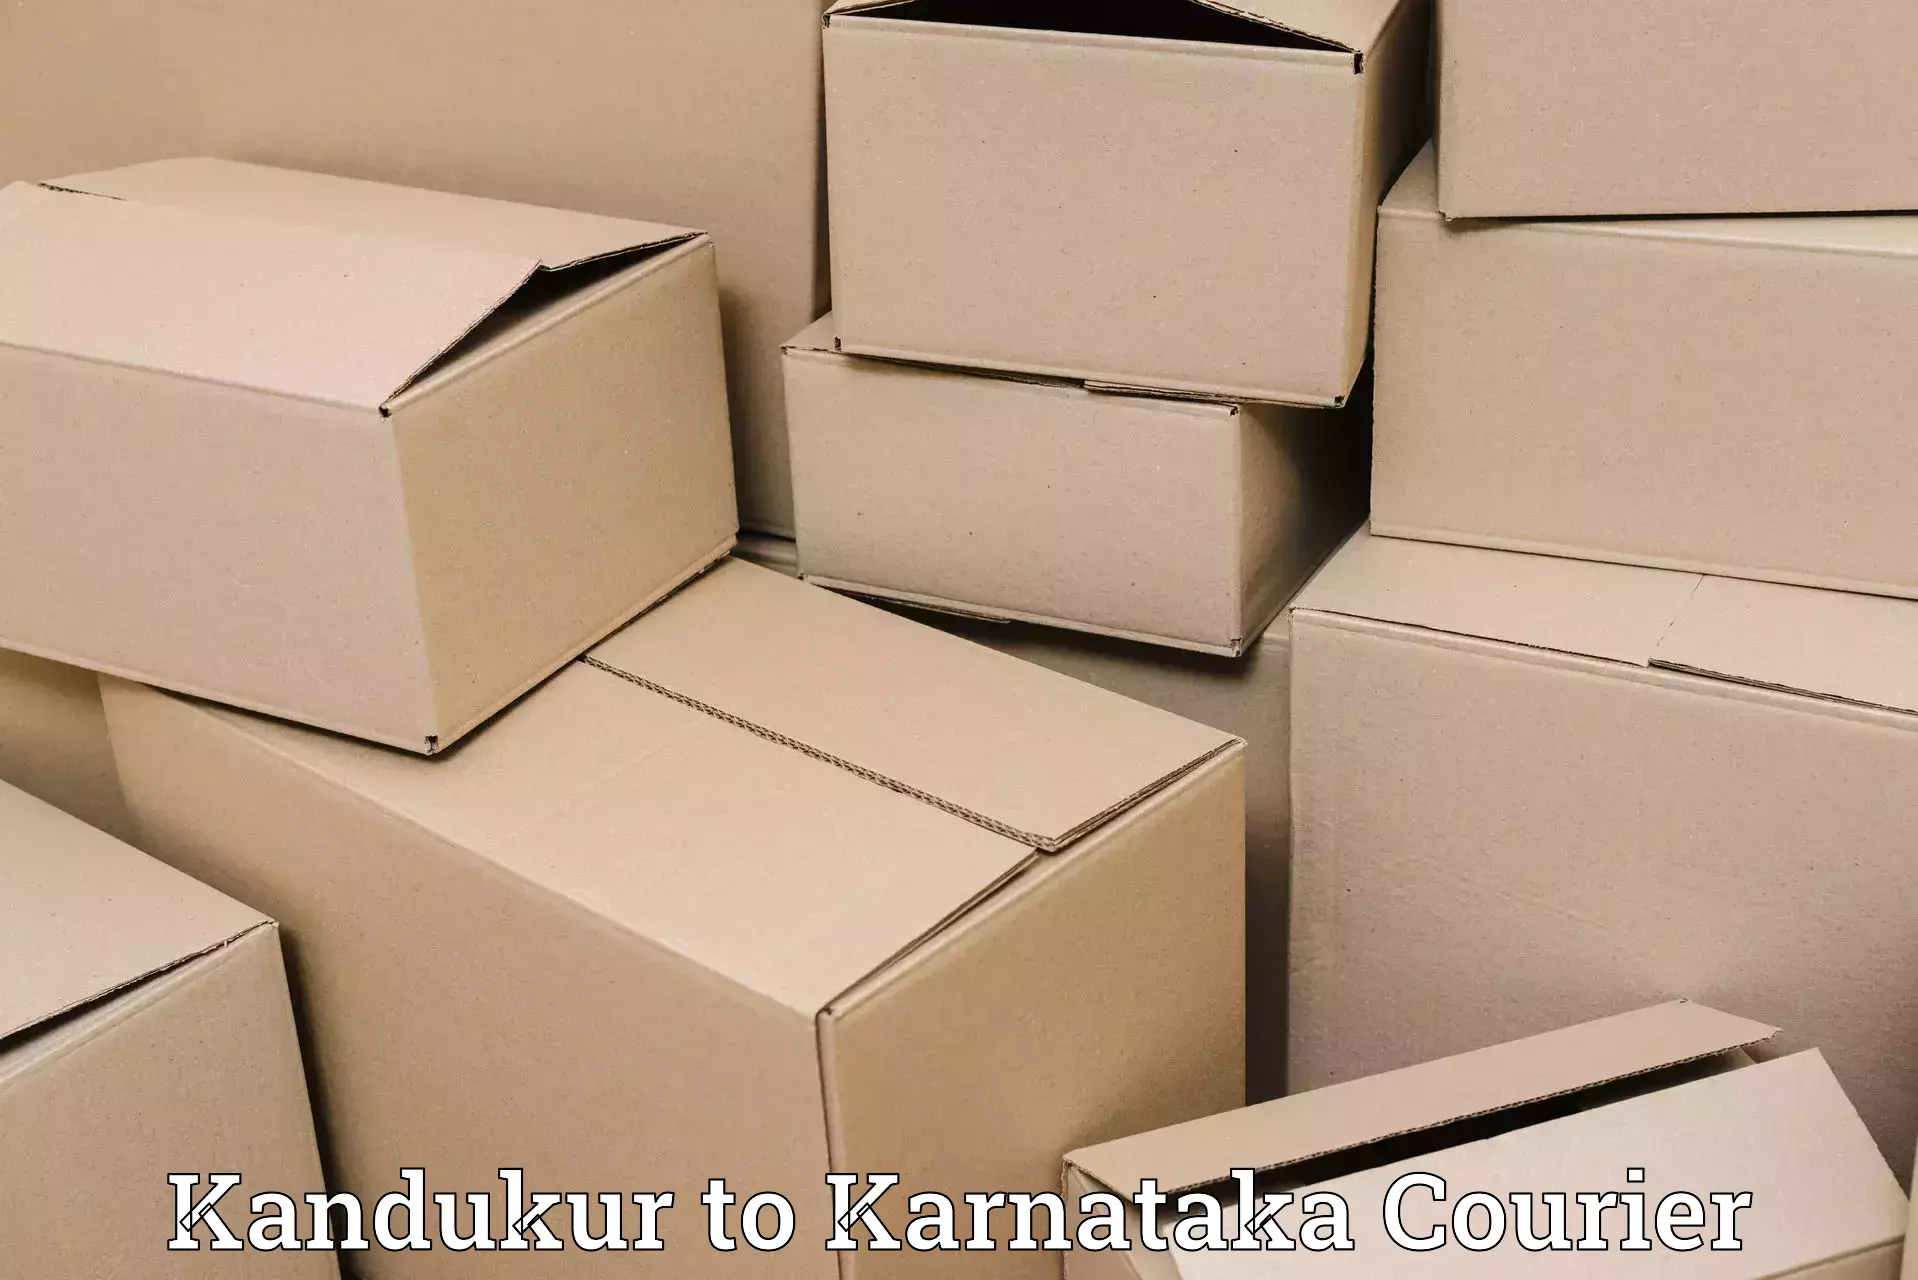 Express package delivery in Kandukur to Basavana Bagewadi